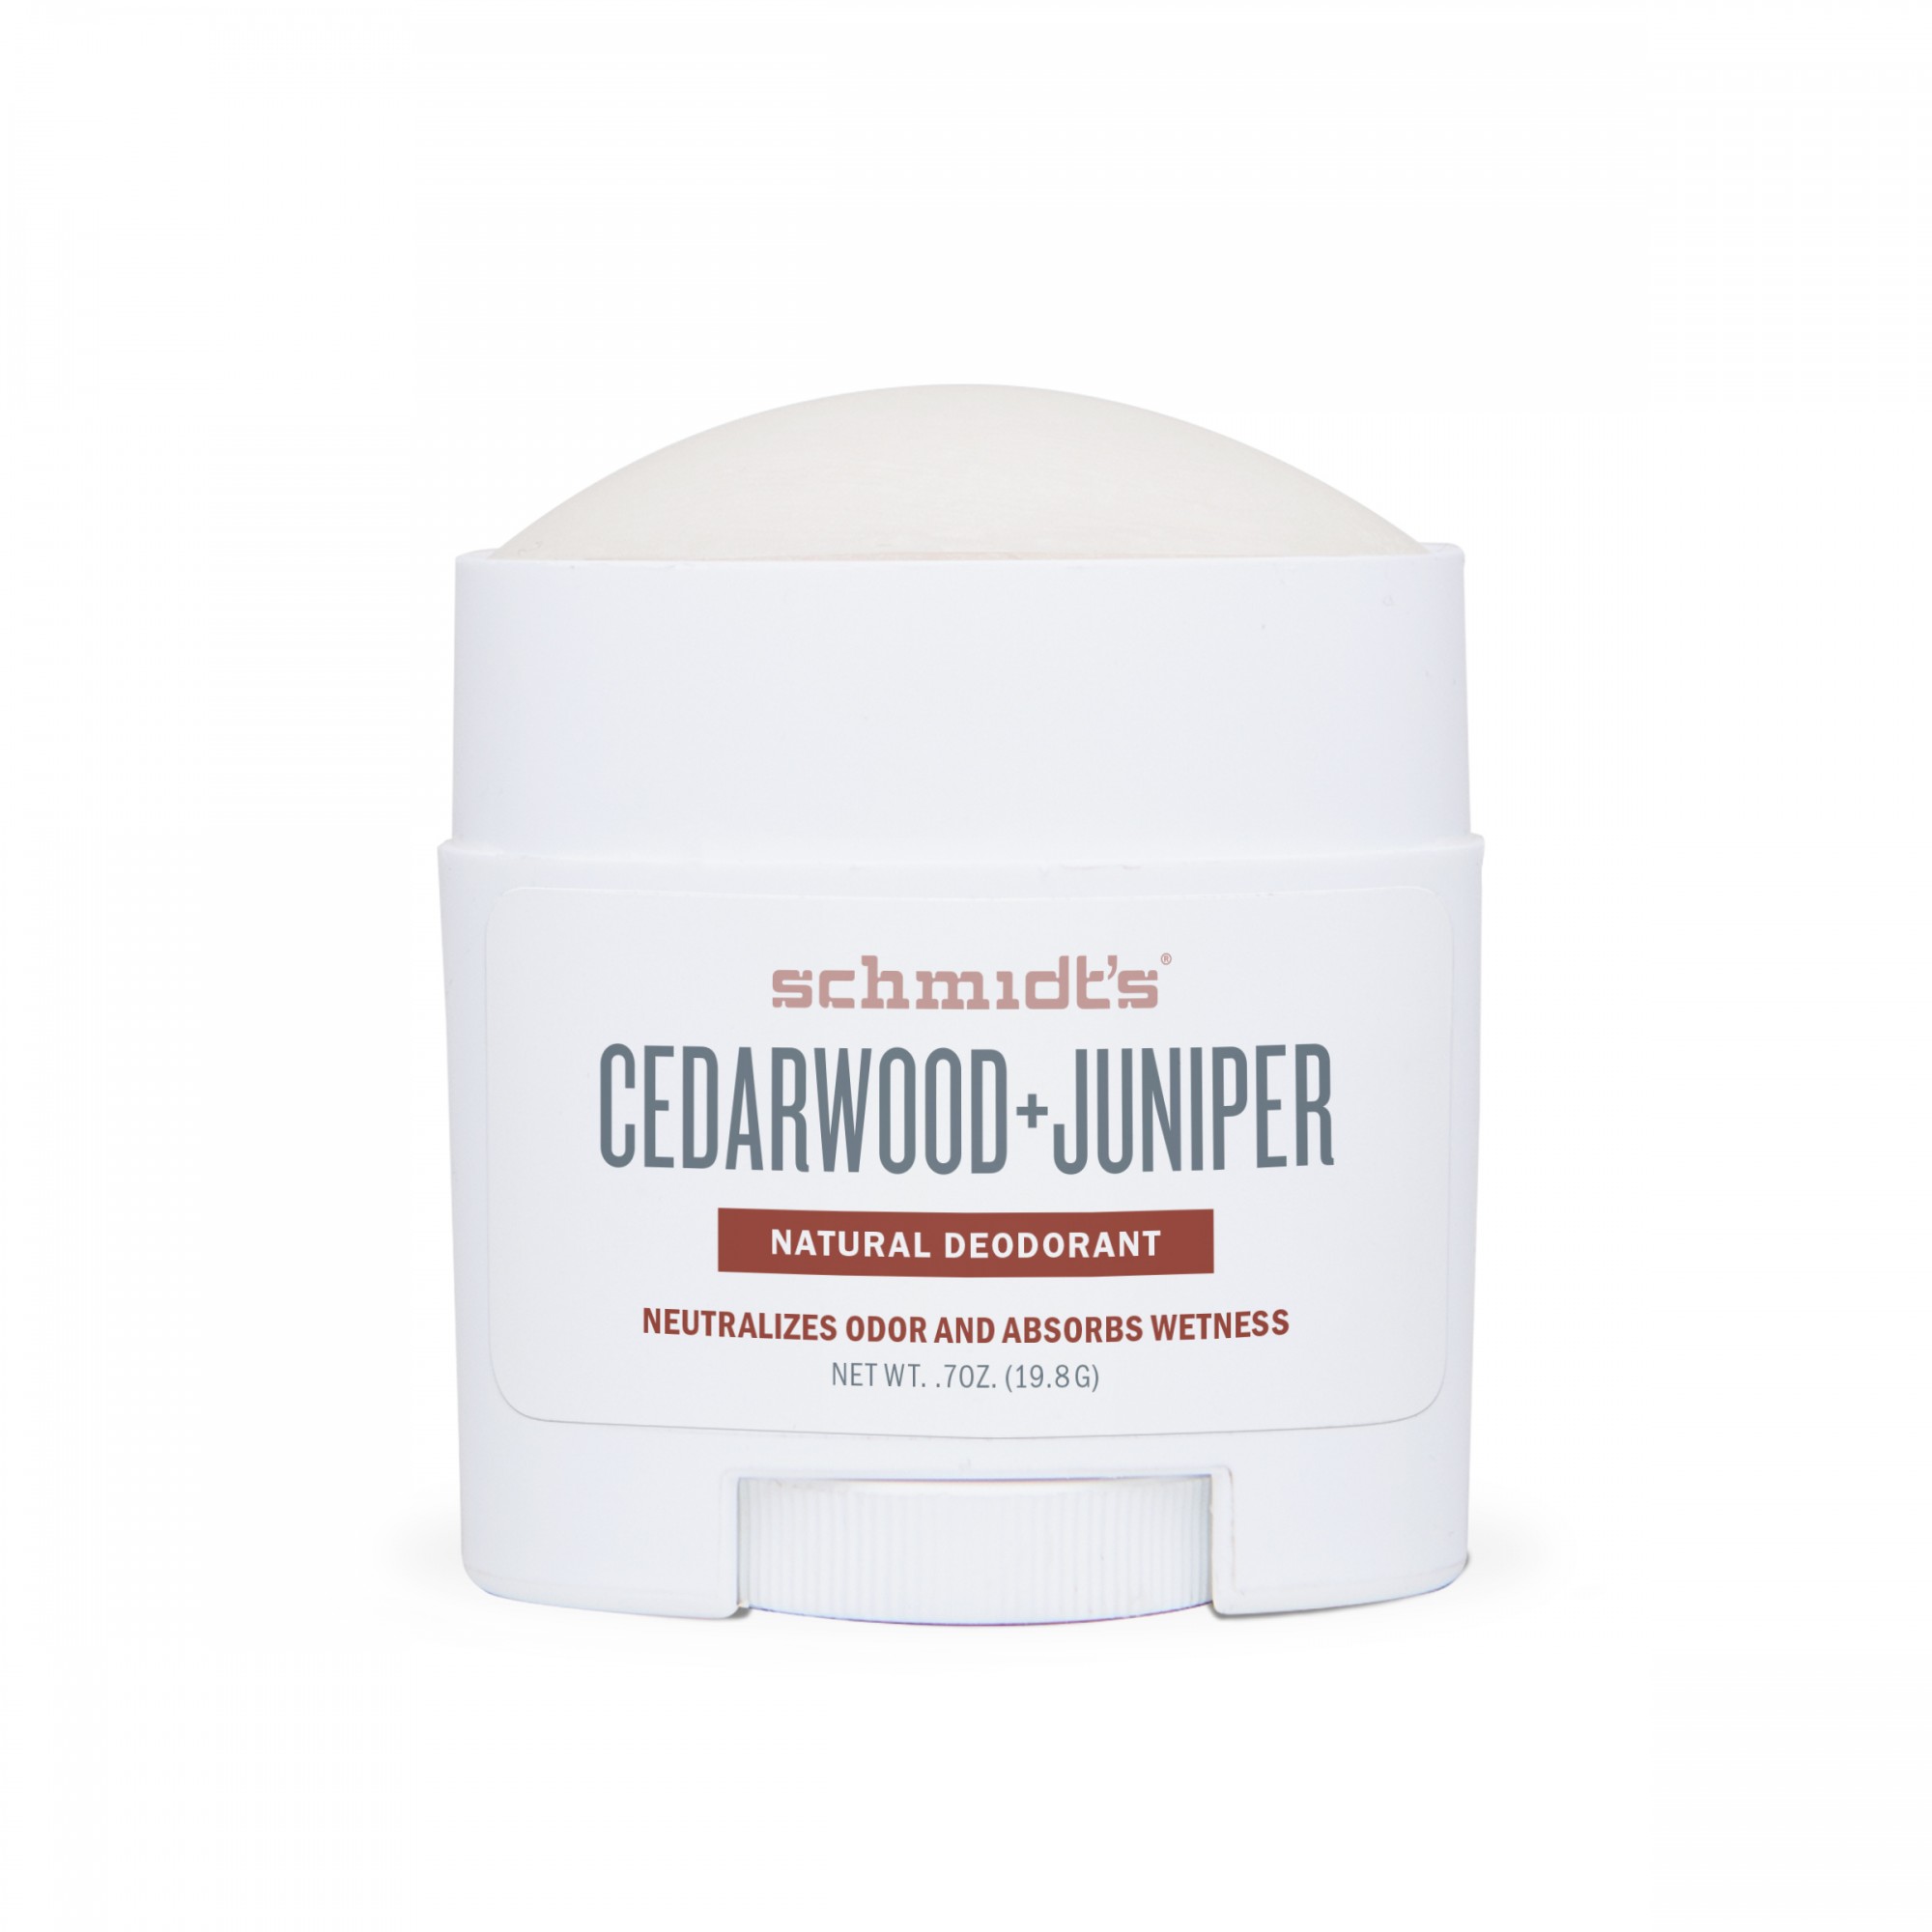 Buy deodorant Cedarwood and Juniper, size, Naturals